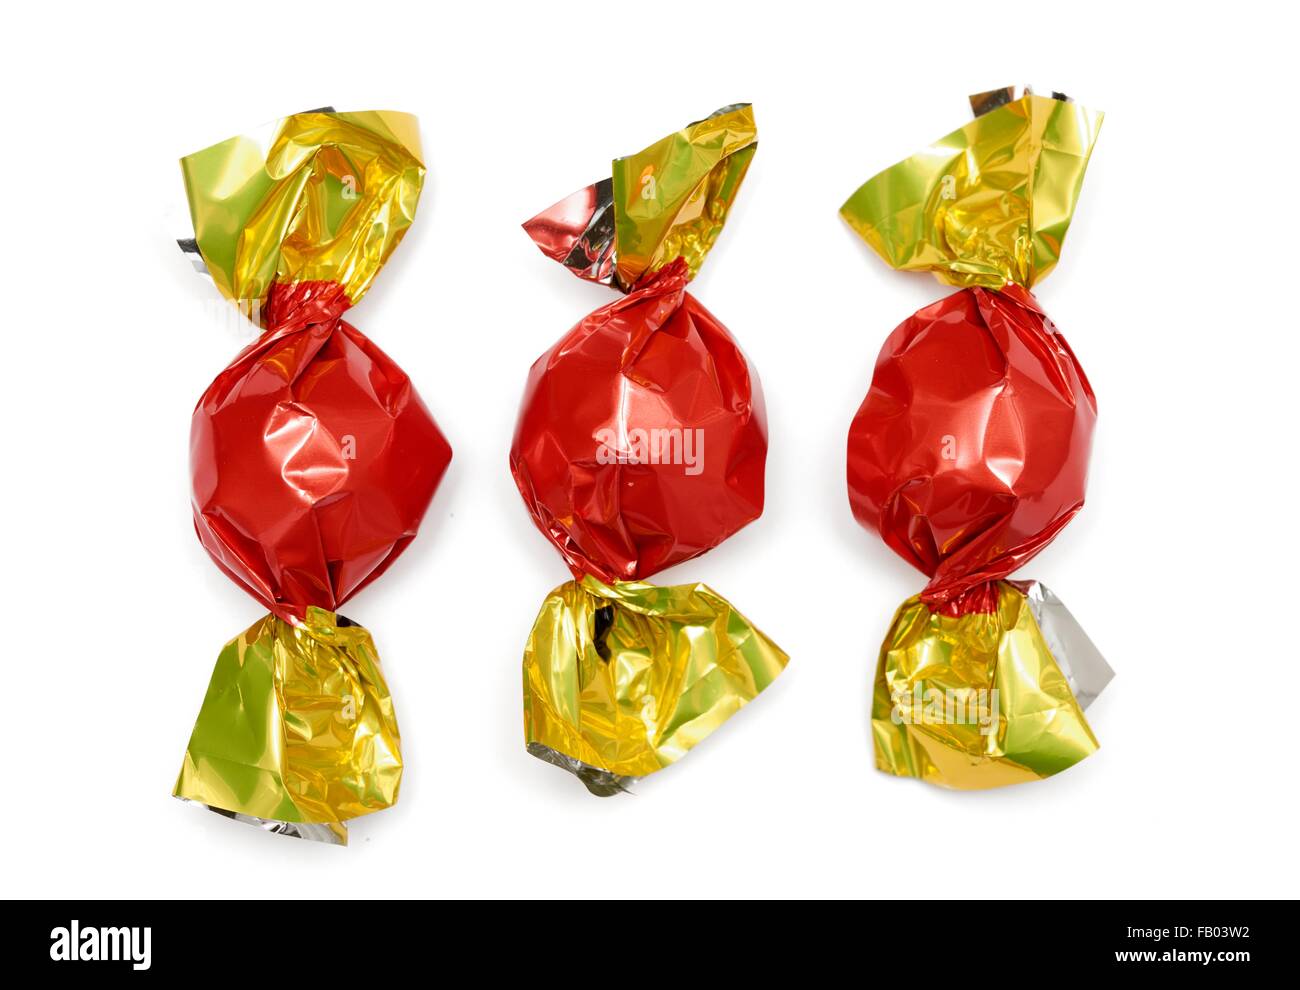 3 bonbons enveloppés dans des emballages de rouge et or Photo Stock - Alamy